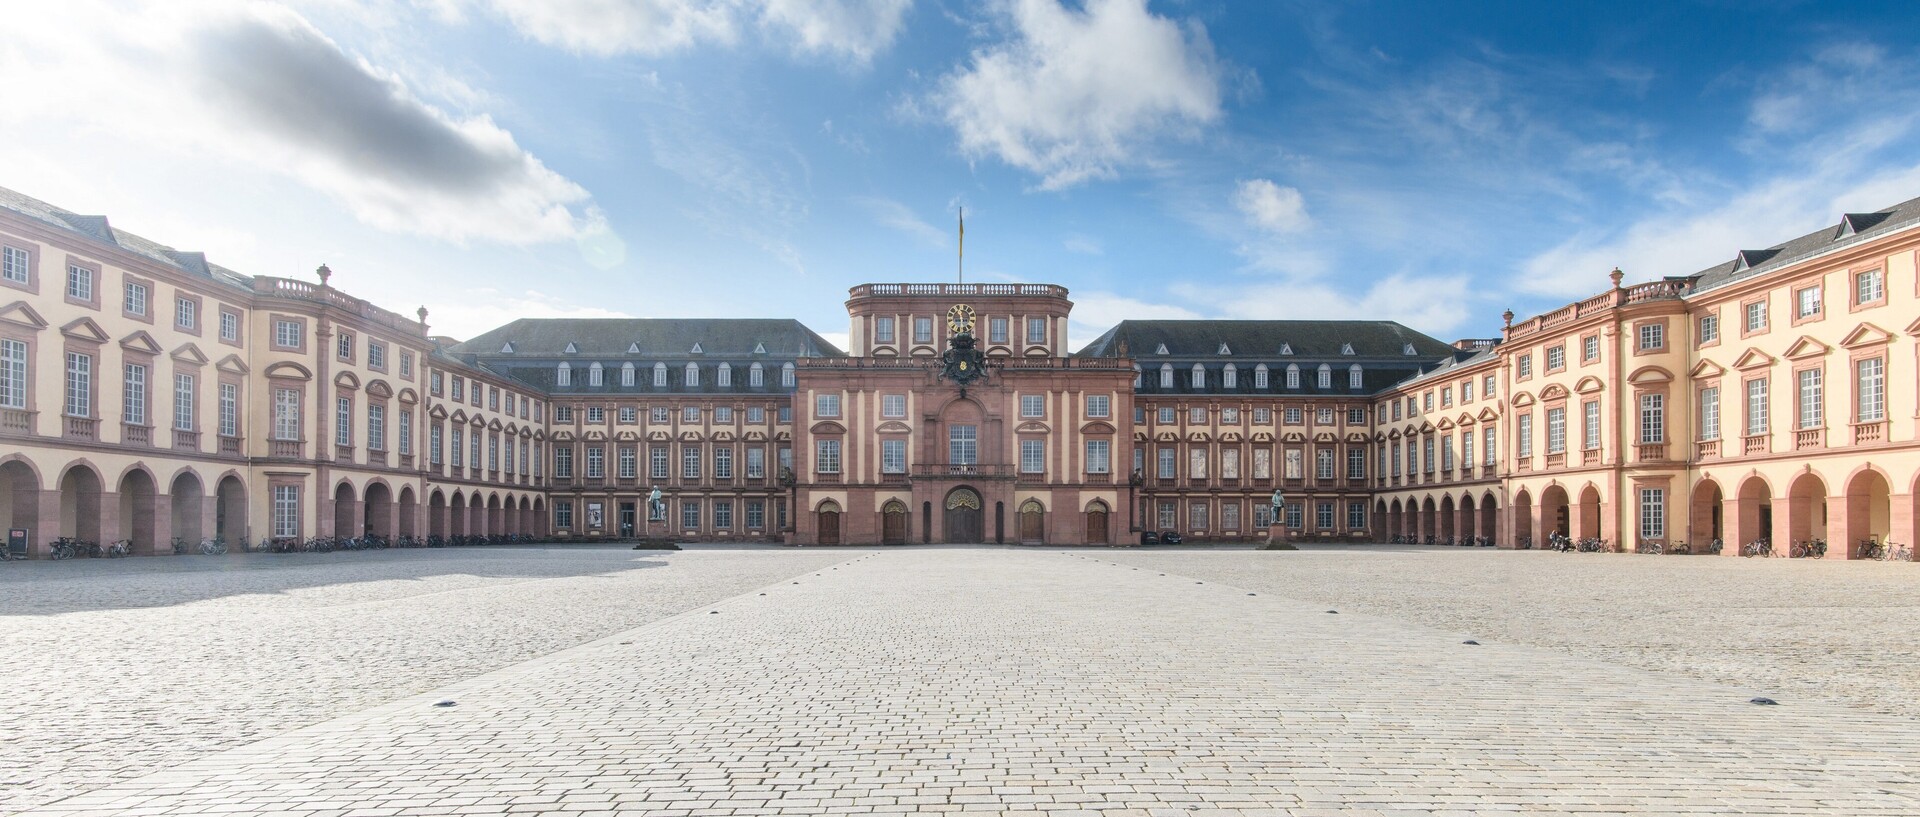 Das Mannheimer Barockschloss und der Ehrenhof.